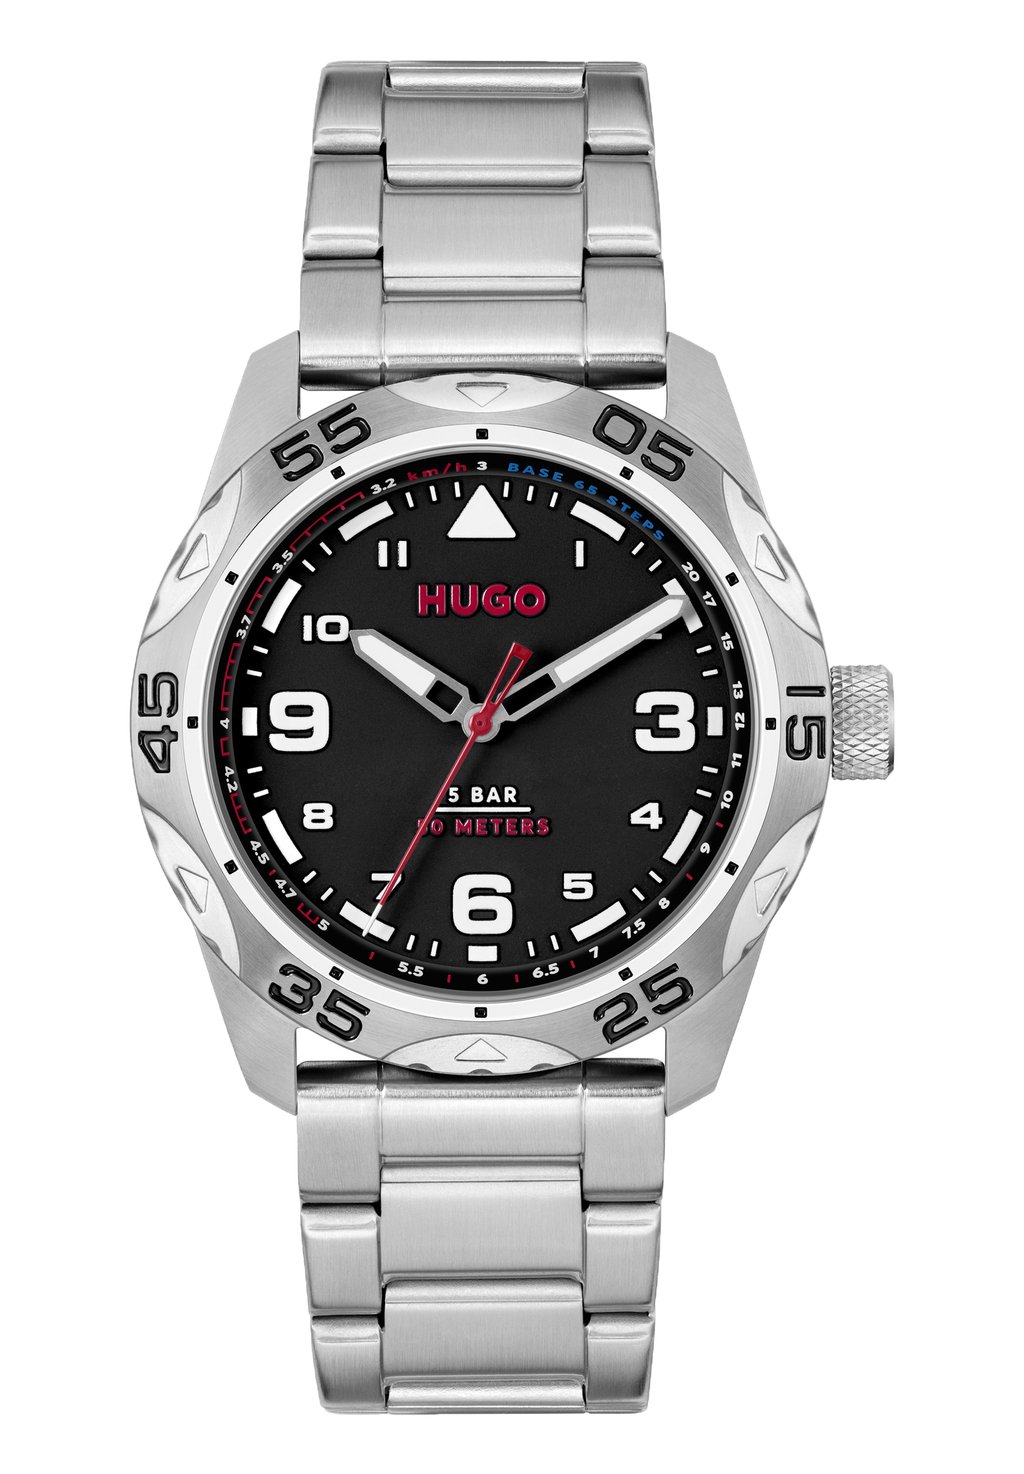 Часы Trek HUGO, цвет silber silber silber schwarz цена и фото